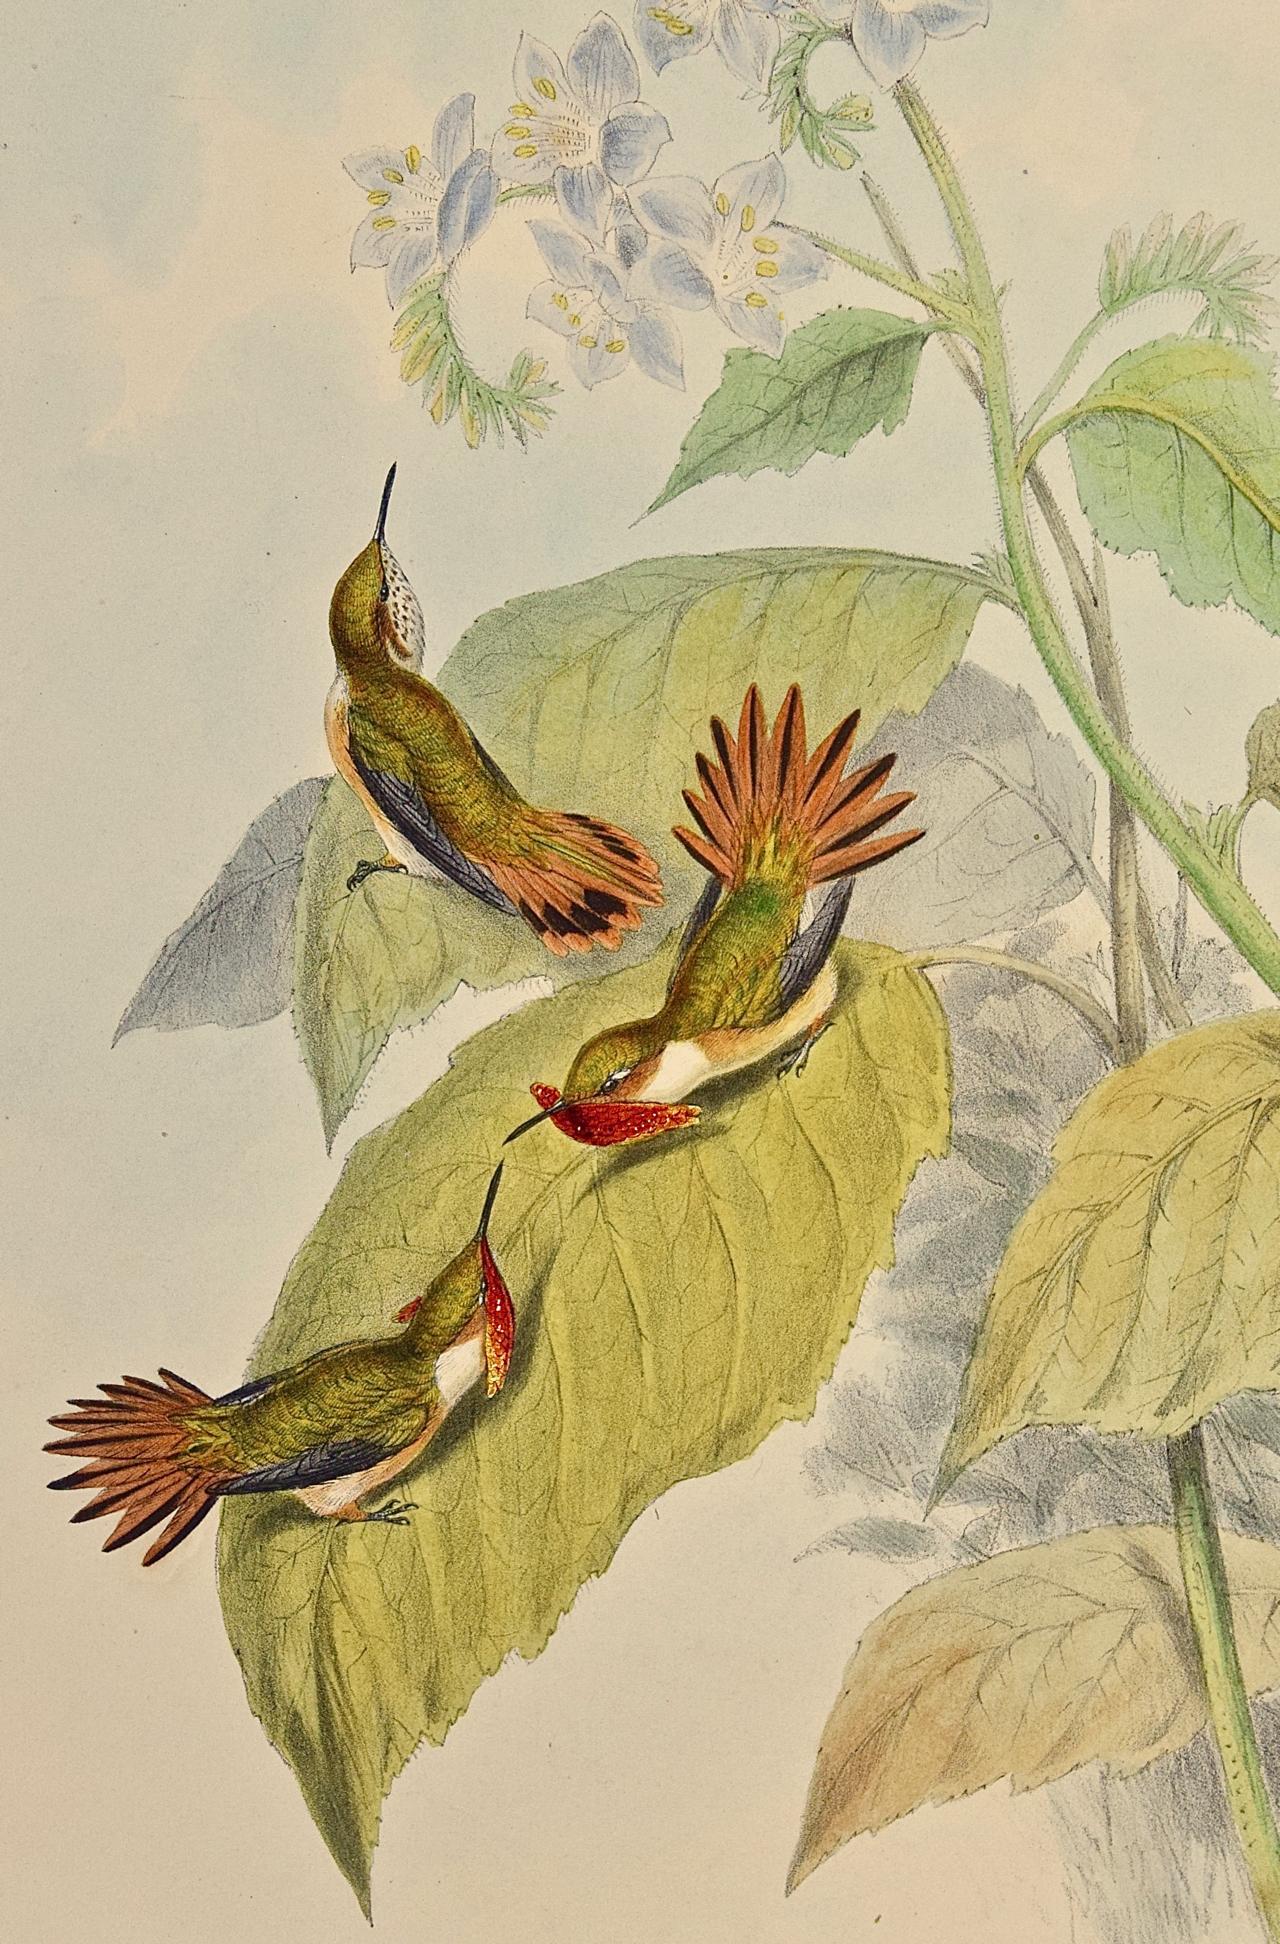 Scintilla en Selasphorus colorée à la main par Gould du 19e siècle (oiseaux de fougère du 19e siècle) - Print de John Gould and Henry Constantine Richter